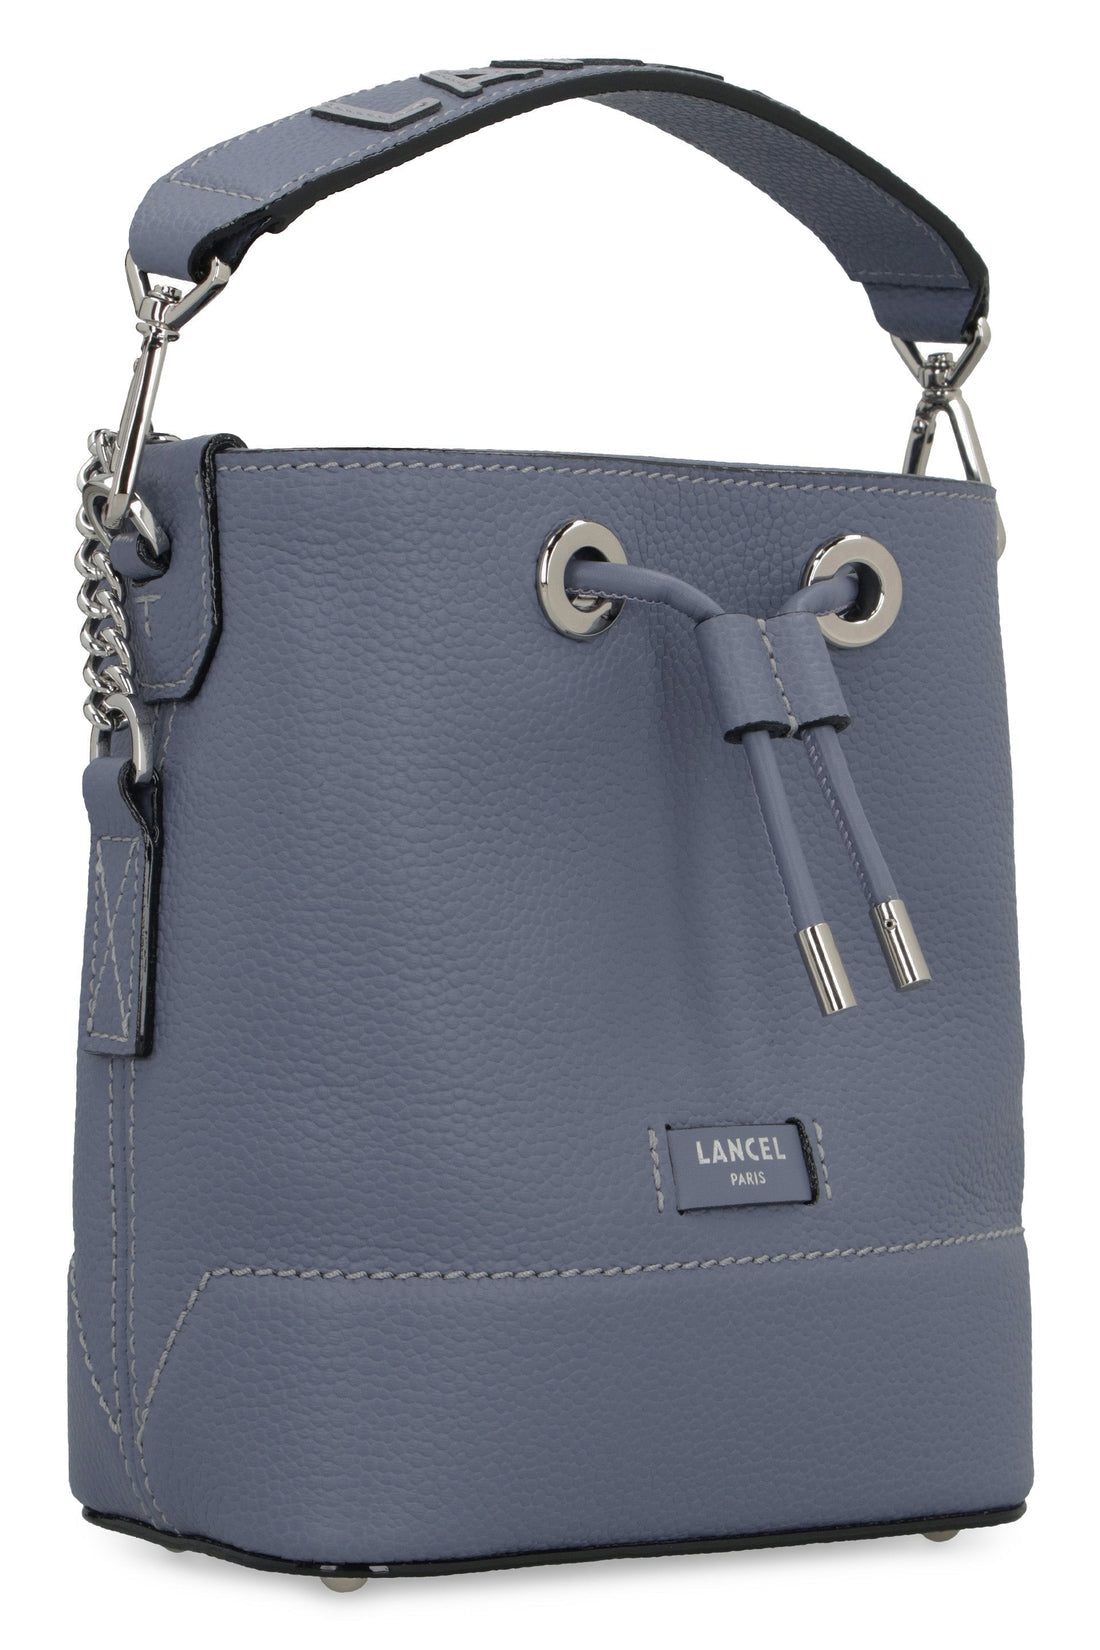 Lancel-OUTLET-SALE-Ninon leather bucket bag-ARCHIVIST